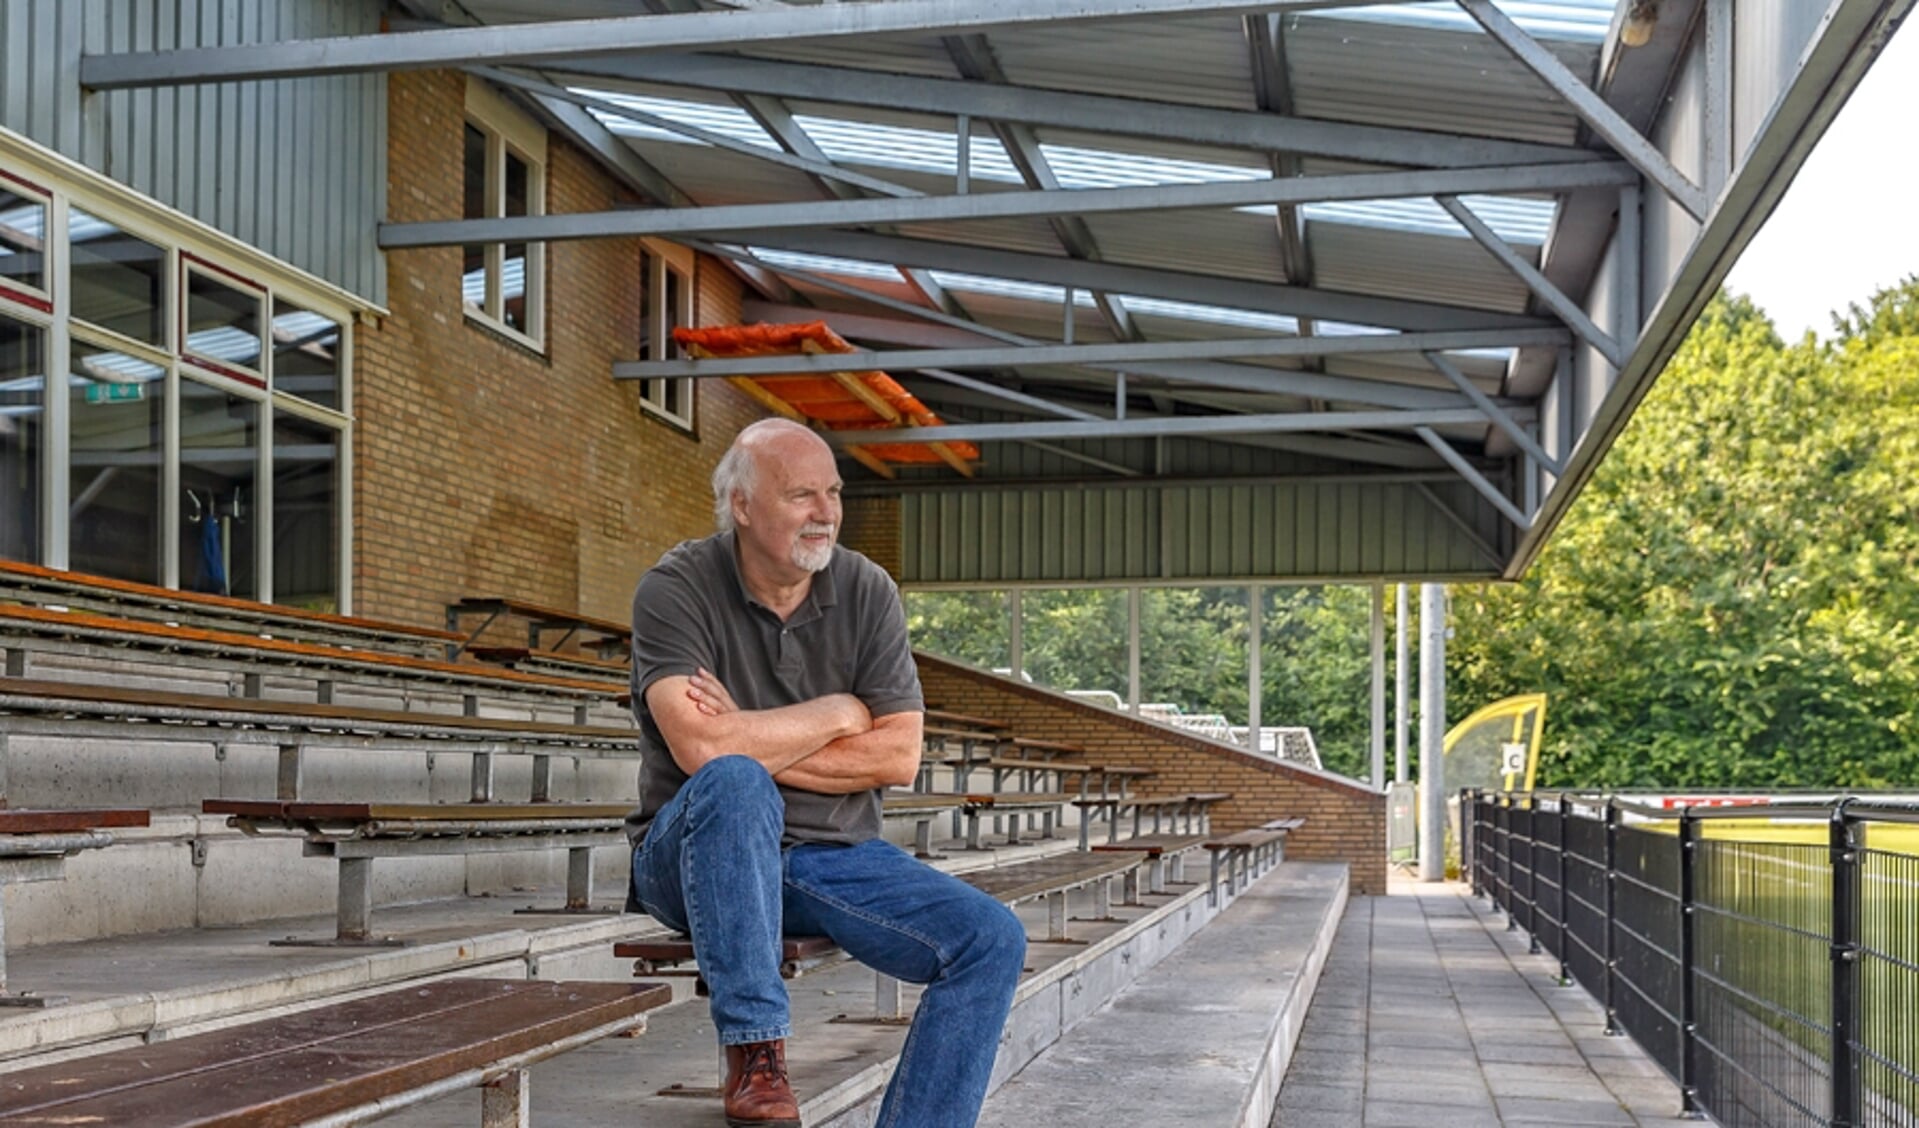  Voorzitter Harry Oosterhuis op de tribune van SV Zwolle onder het pas gerenoveerde dak